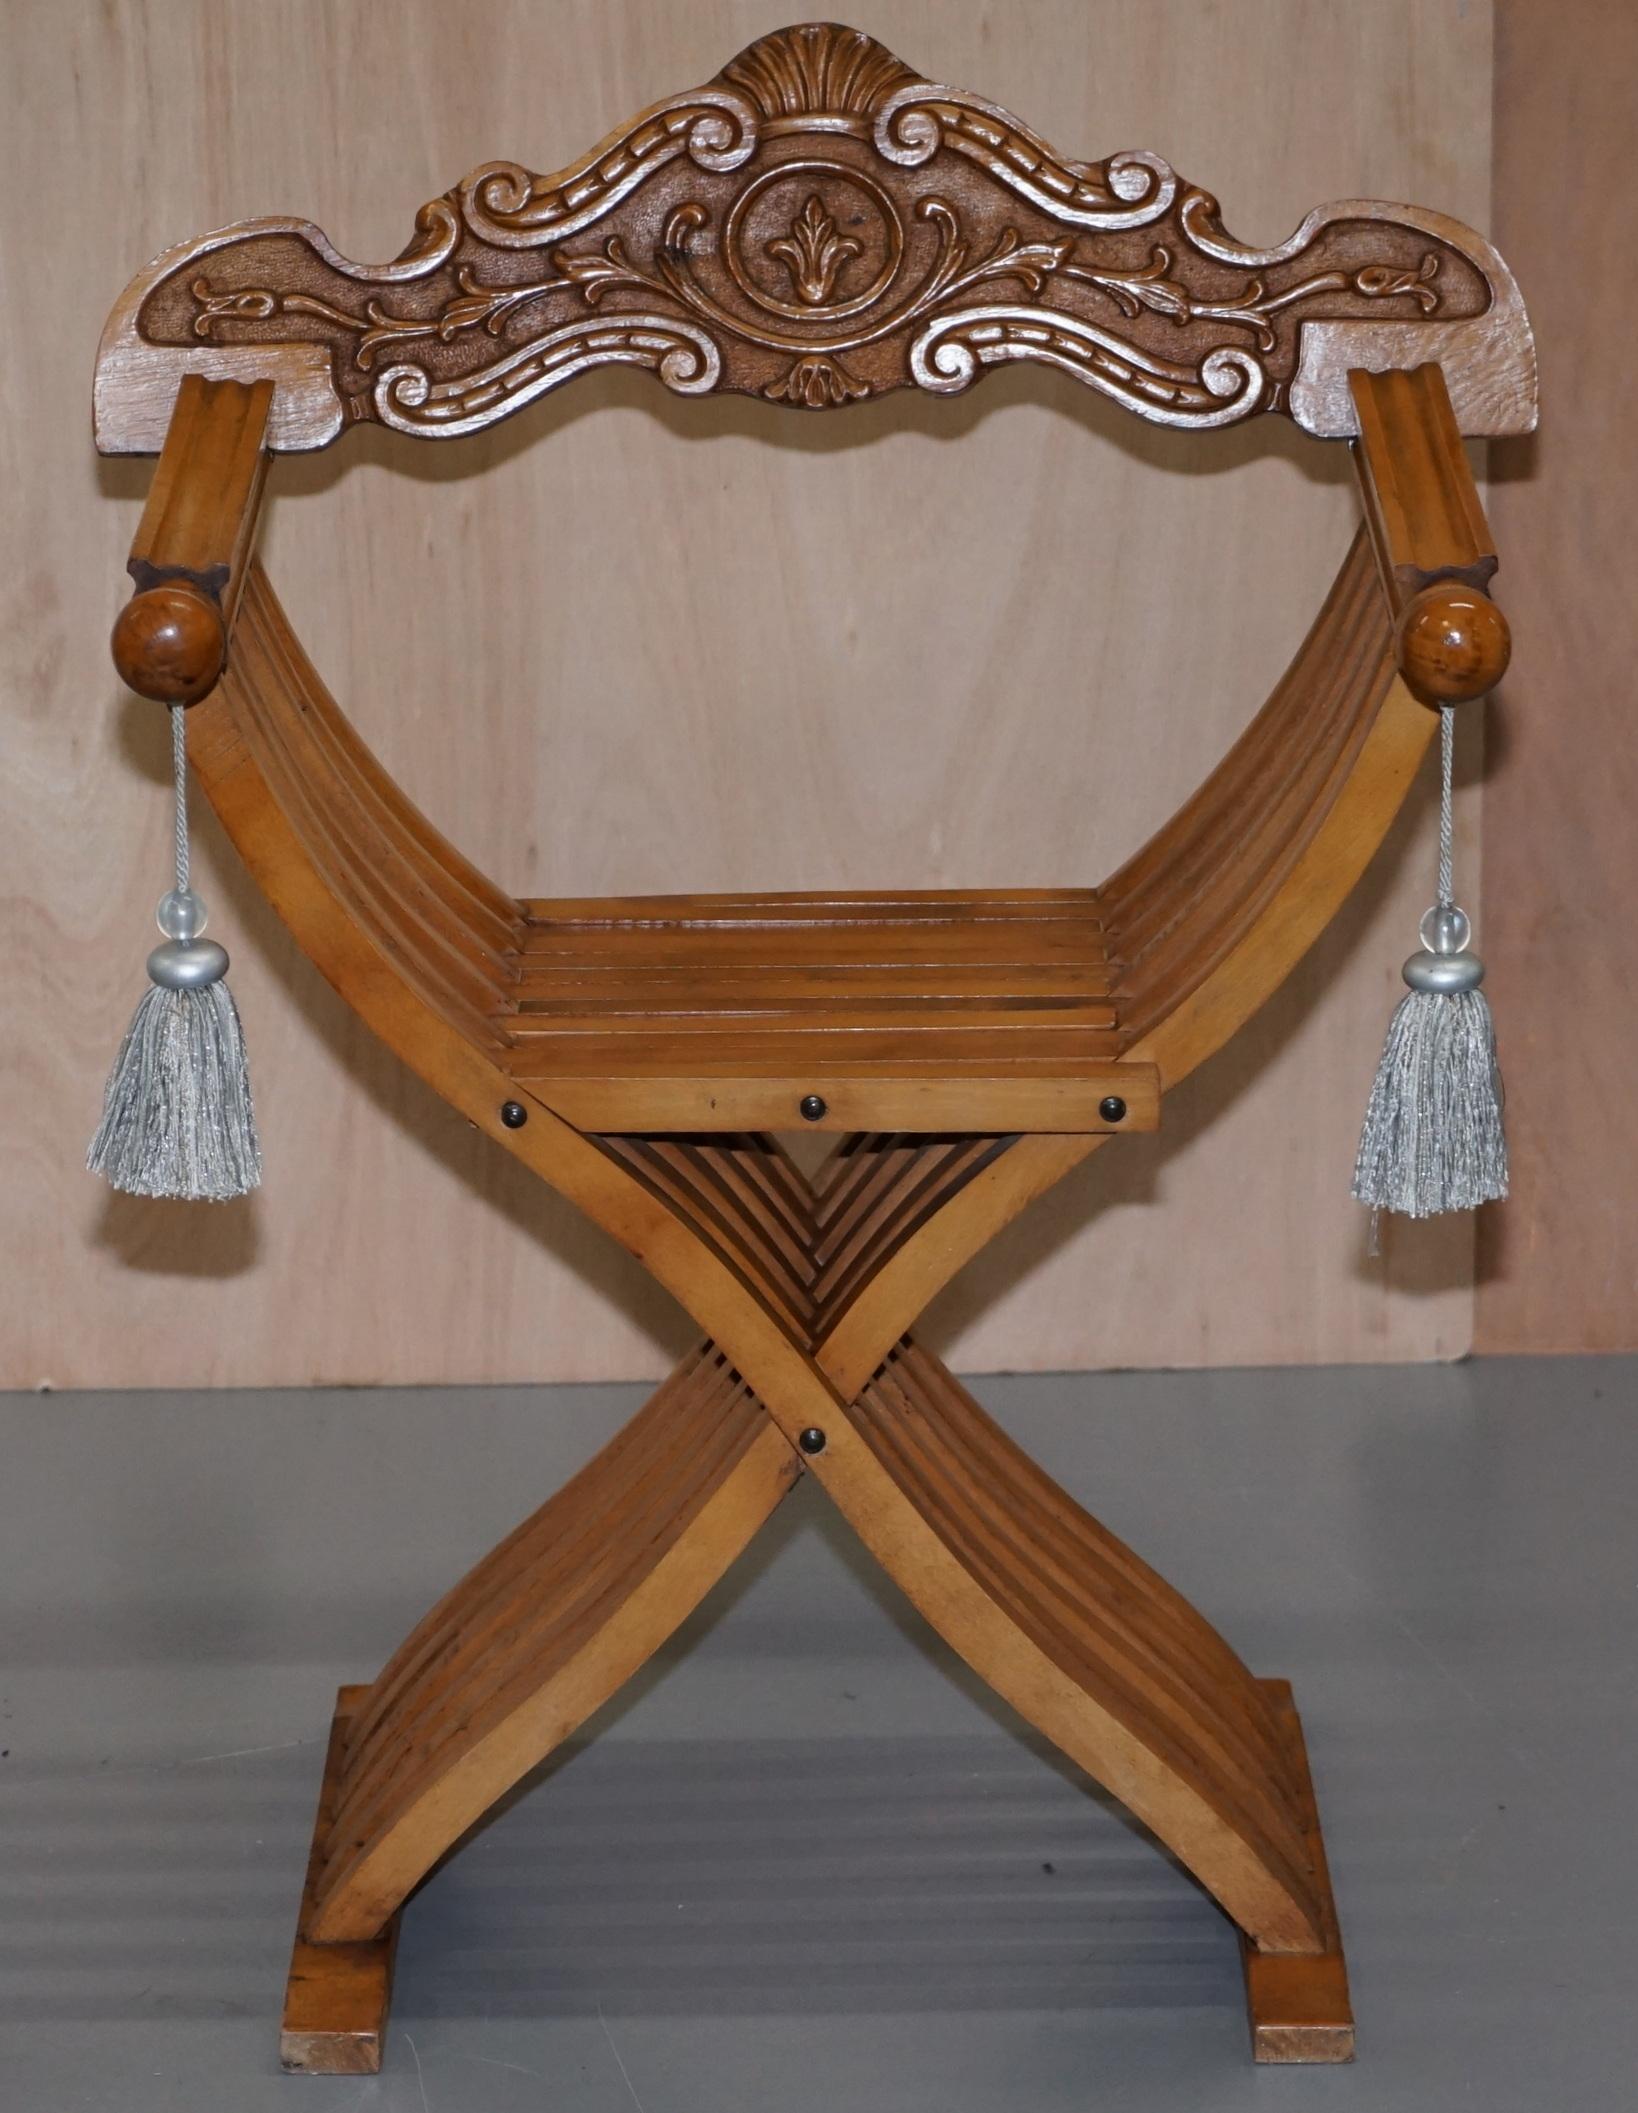 Nous avons le plaisir de proposer à la vente l'un des deux fauteuils Savonarola.

J'ai une paire, cette enchère est pour la chaise traditionnelle avec les bras arrondis et les pompons de soie, l'autre chaise qui est listée sous mes autres articles